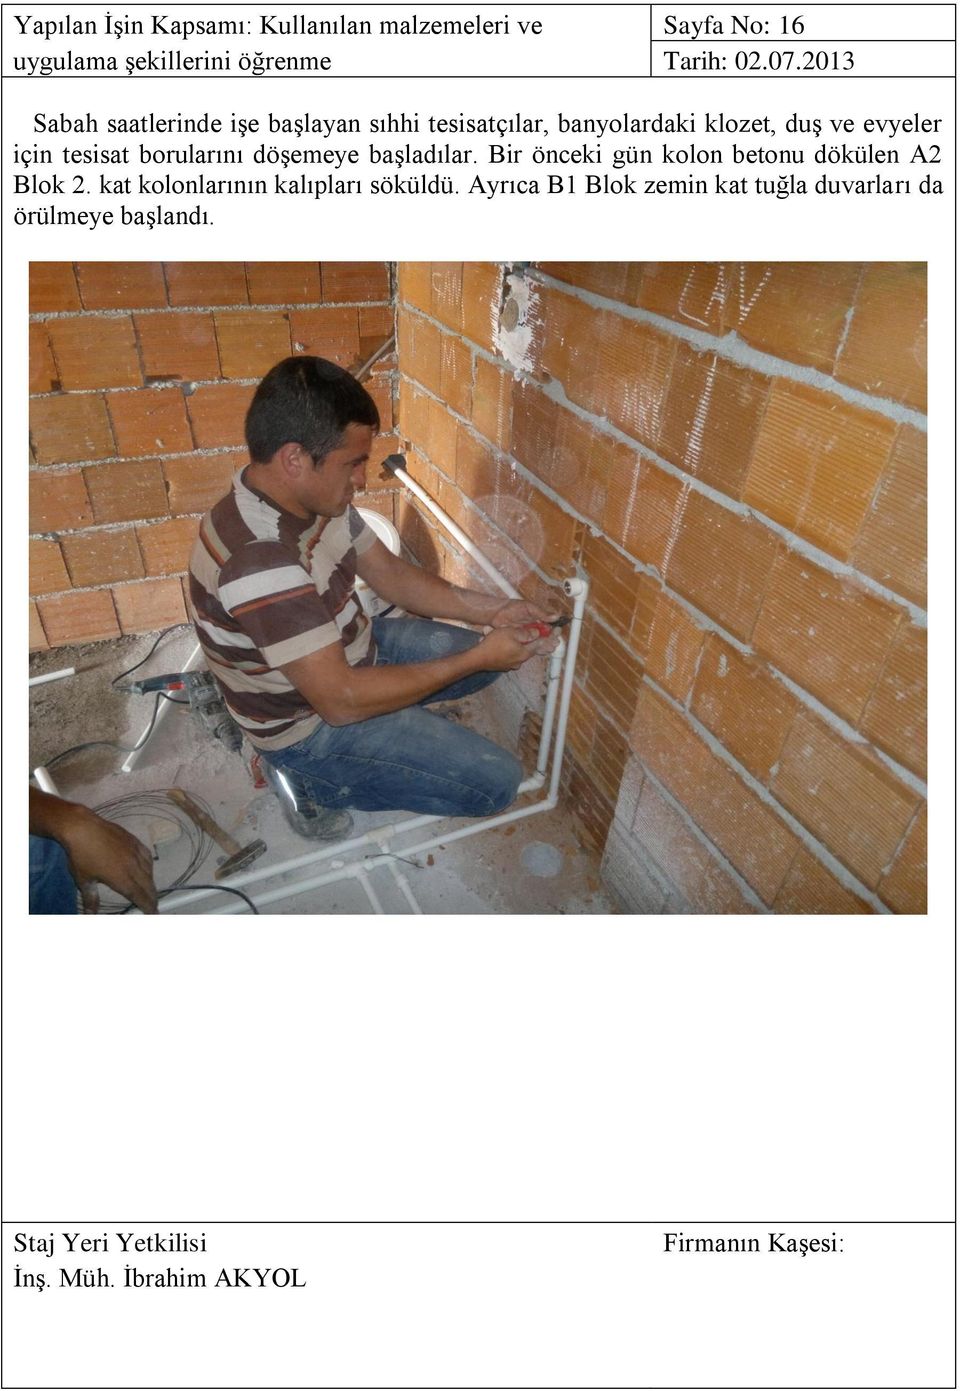 2013 Sabah saatlerinde işe başlayan sıhhi tesisatçılar, banyolardaki klozet, duş ve evyeler için